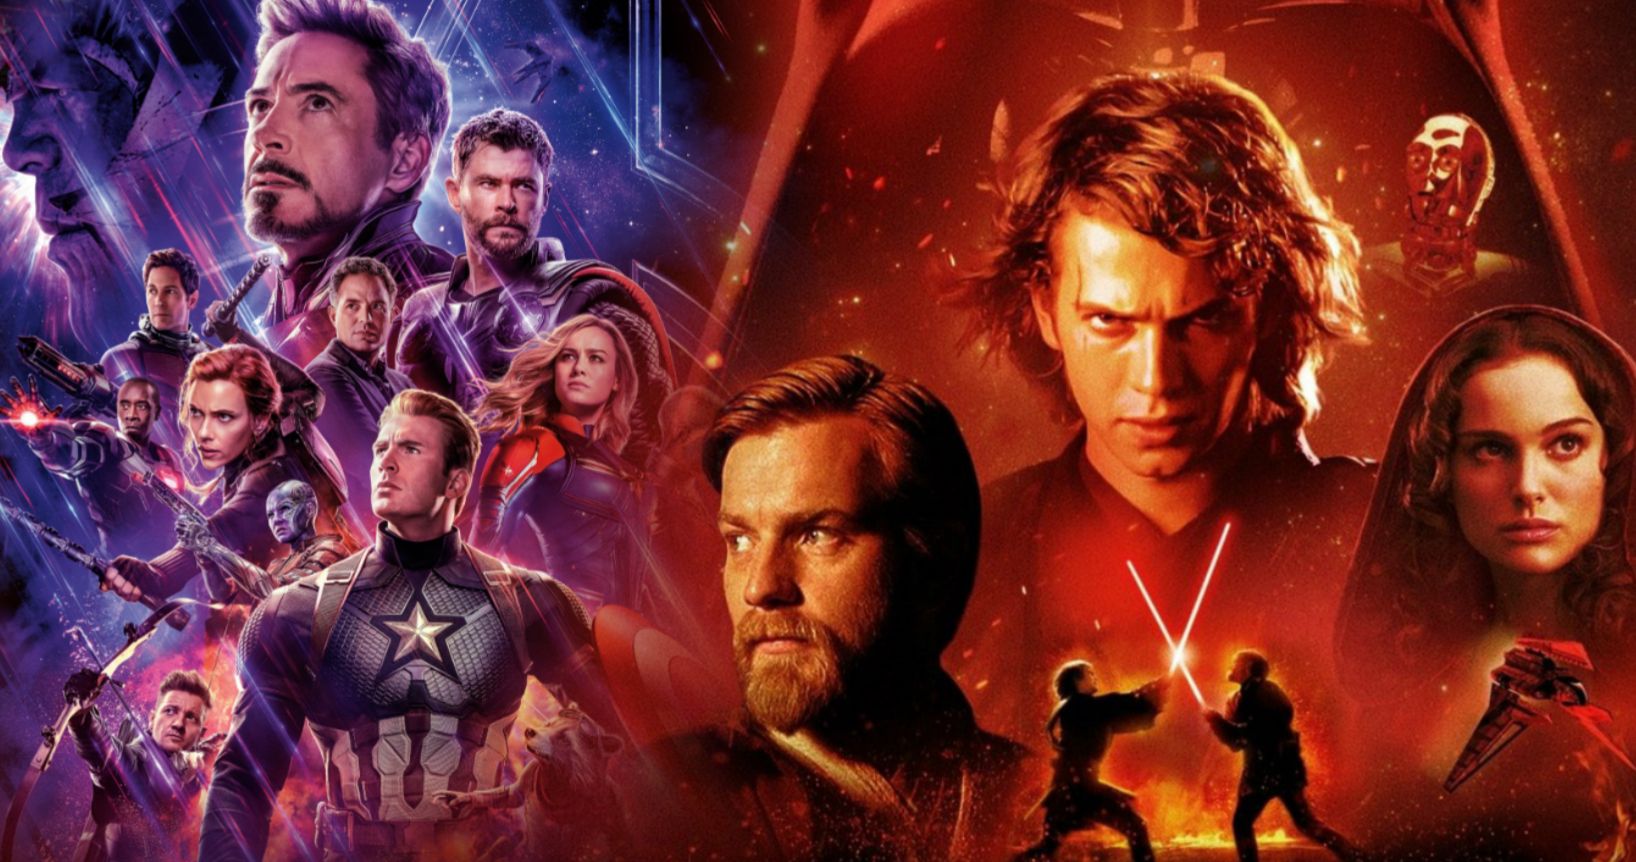 Revenge of the Sith Obliterates Avengers: Endgame in Summer Movie Poll